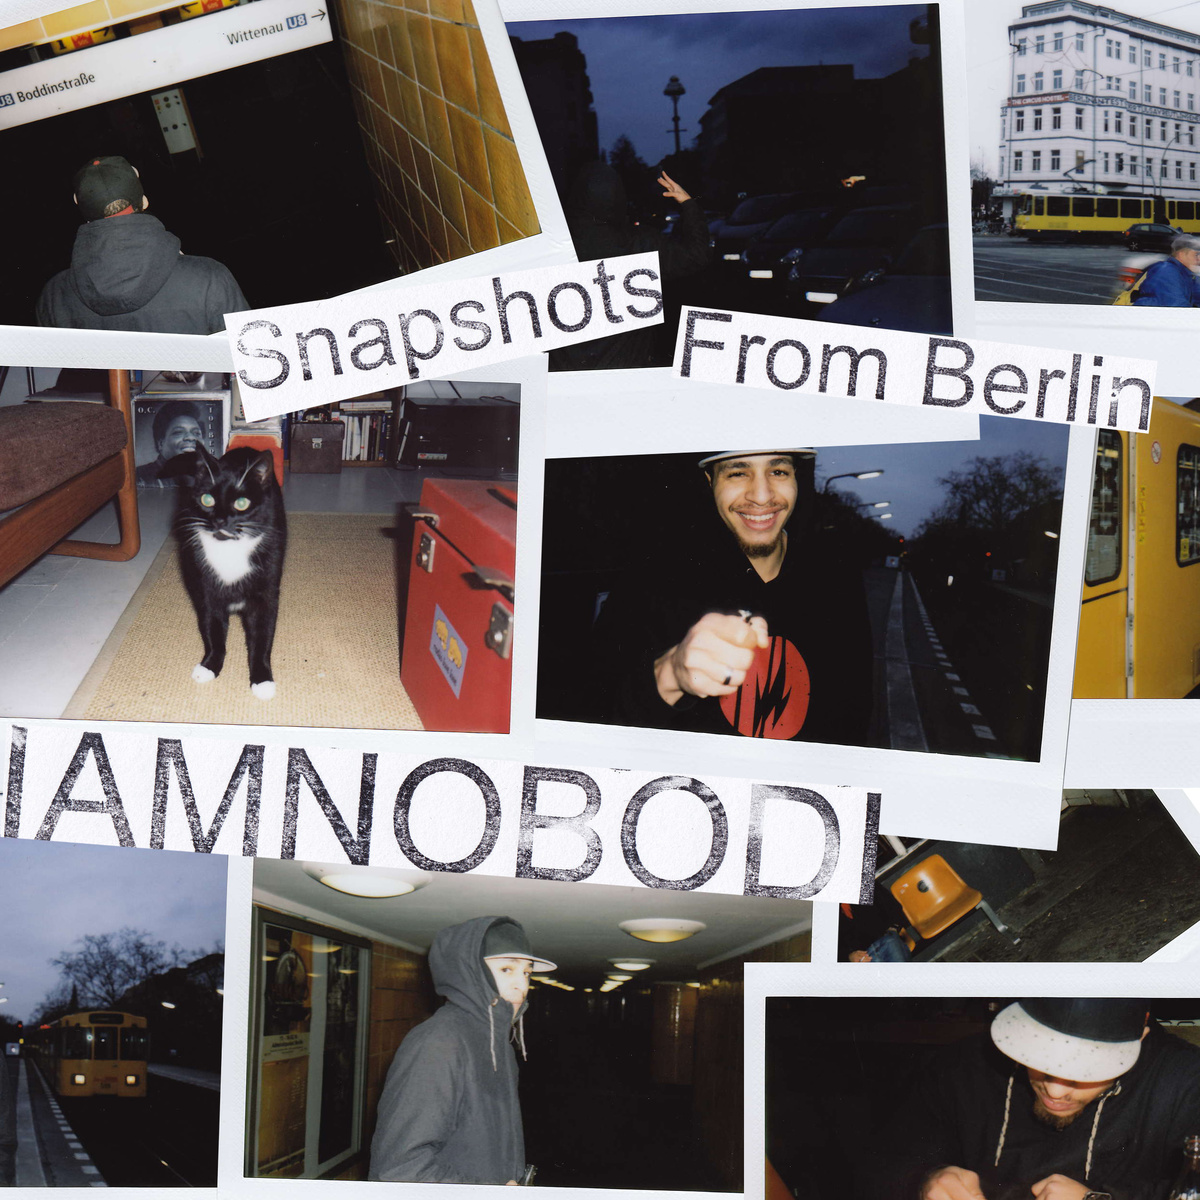 IAMNOBODI "Snapshots From Berlin" Release | @IAMNOBODI @jakartarecords